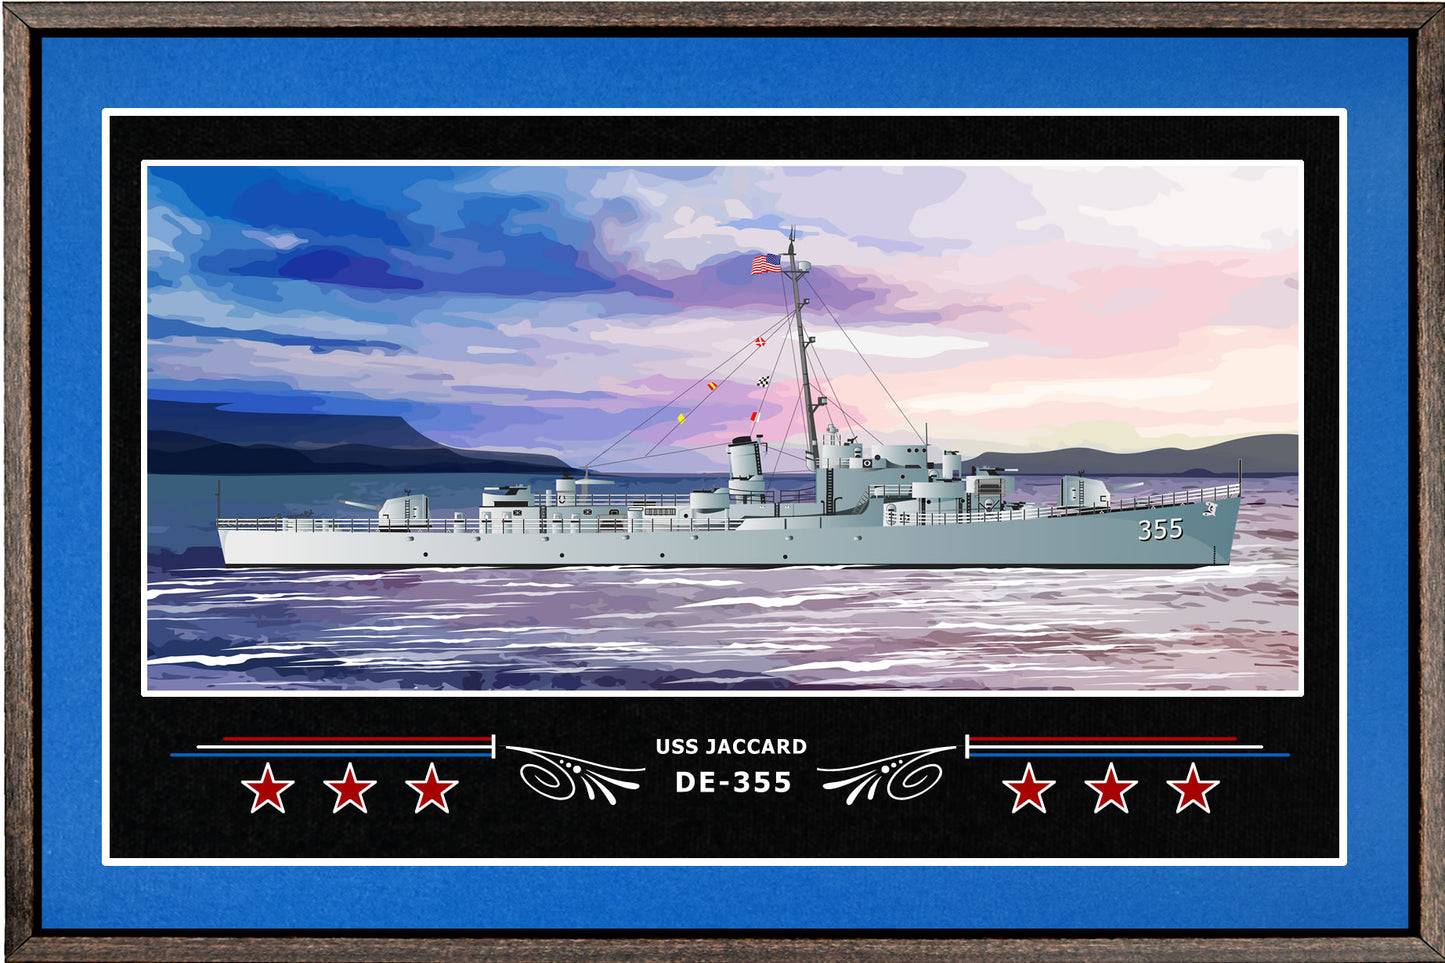 USS JACCARD DE 355 BOX FRAMED CANVAS ART BLUE